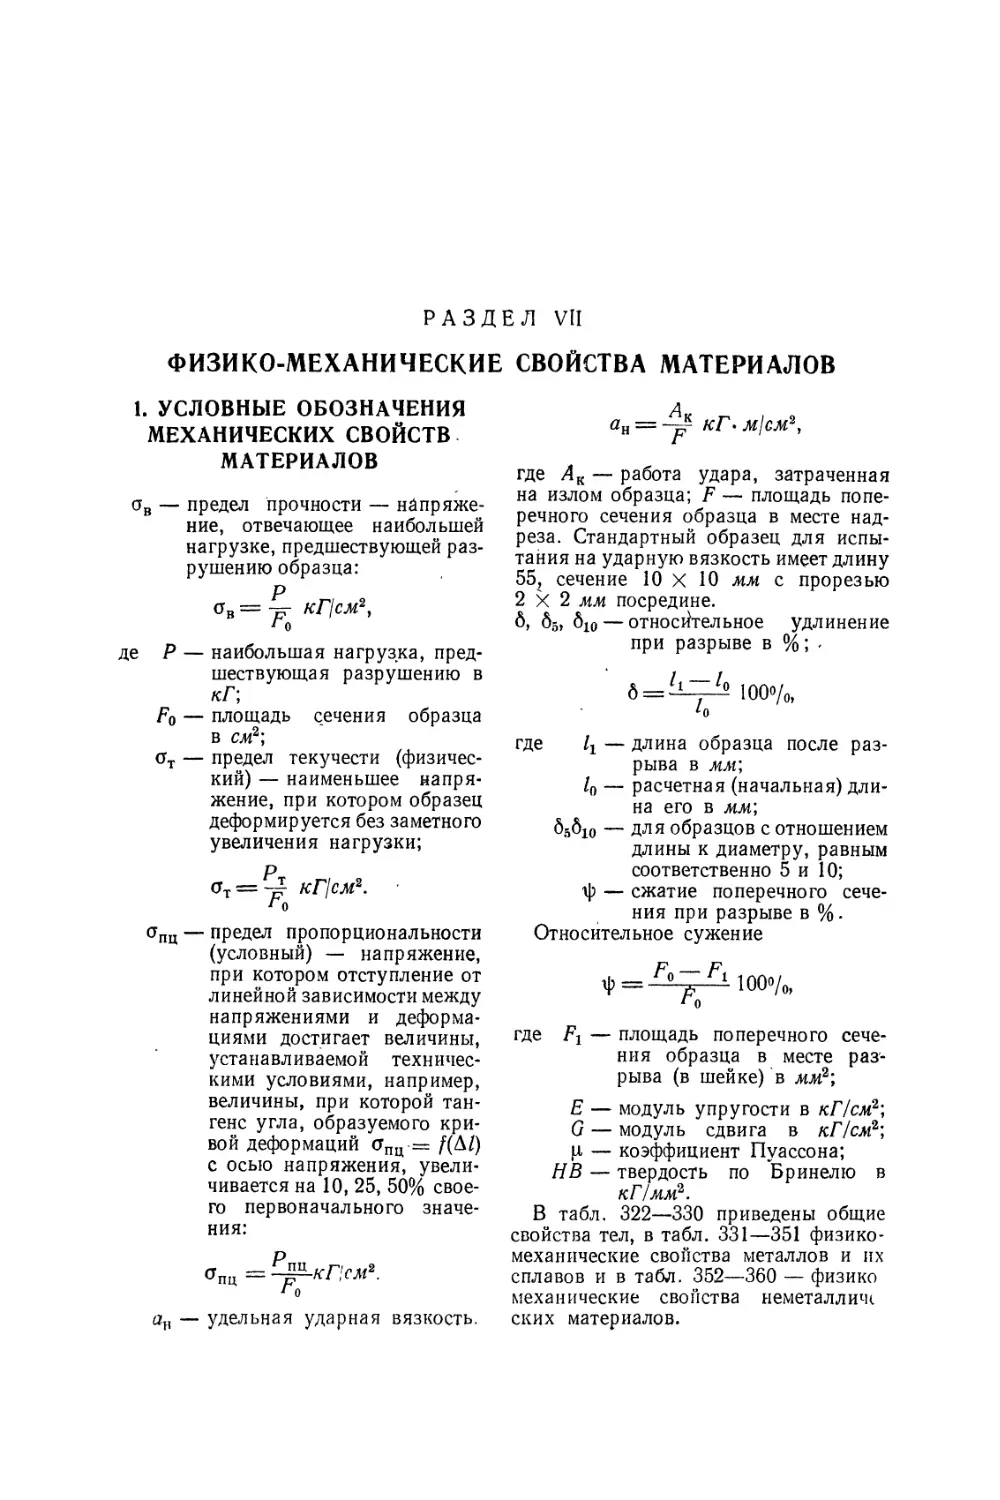 Раздел VII Физико-механические свойства материалов
1. Условные обозначения механических свойств материалов